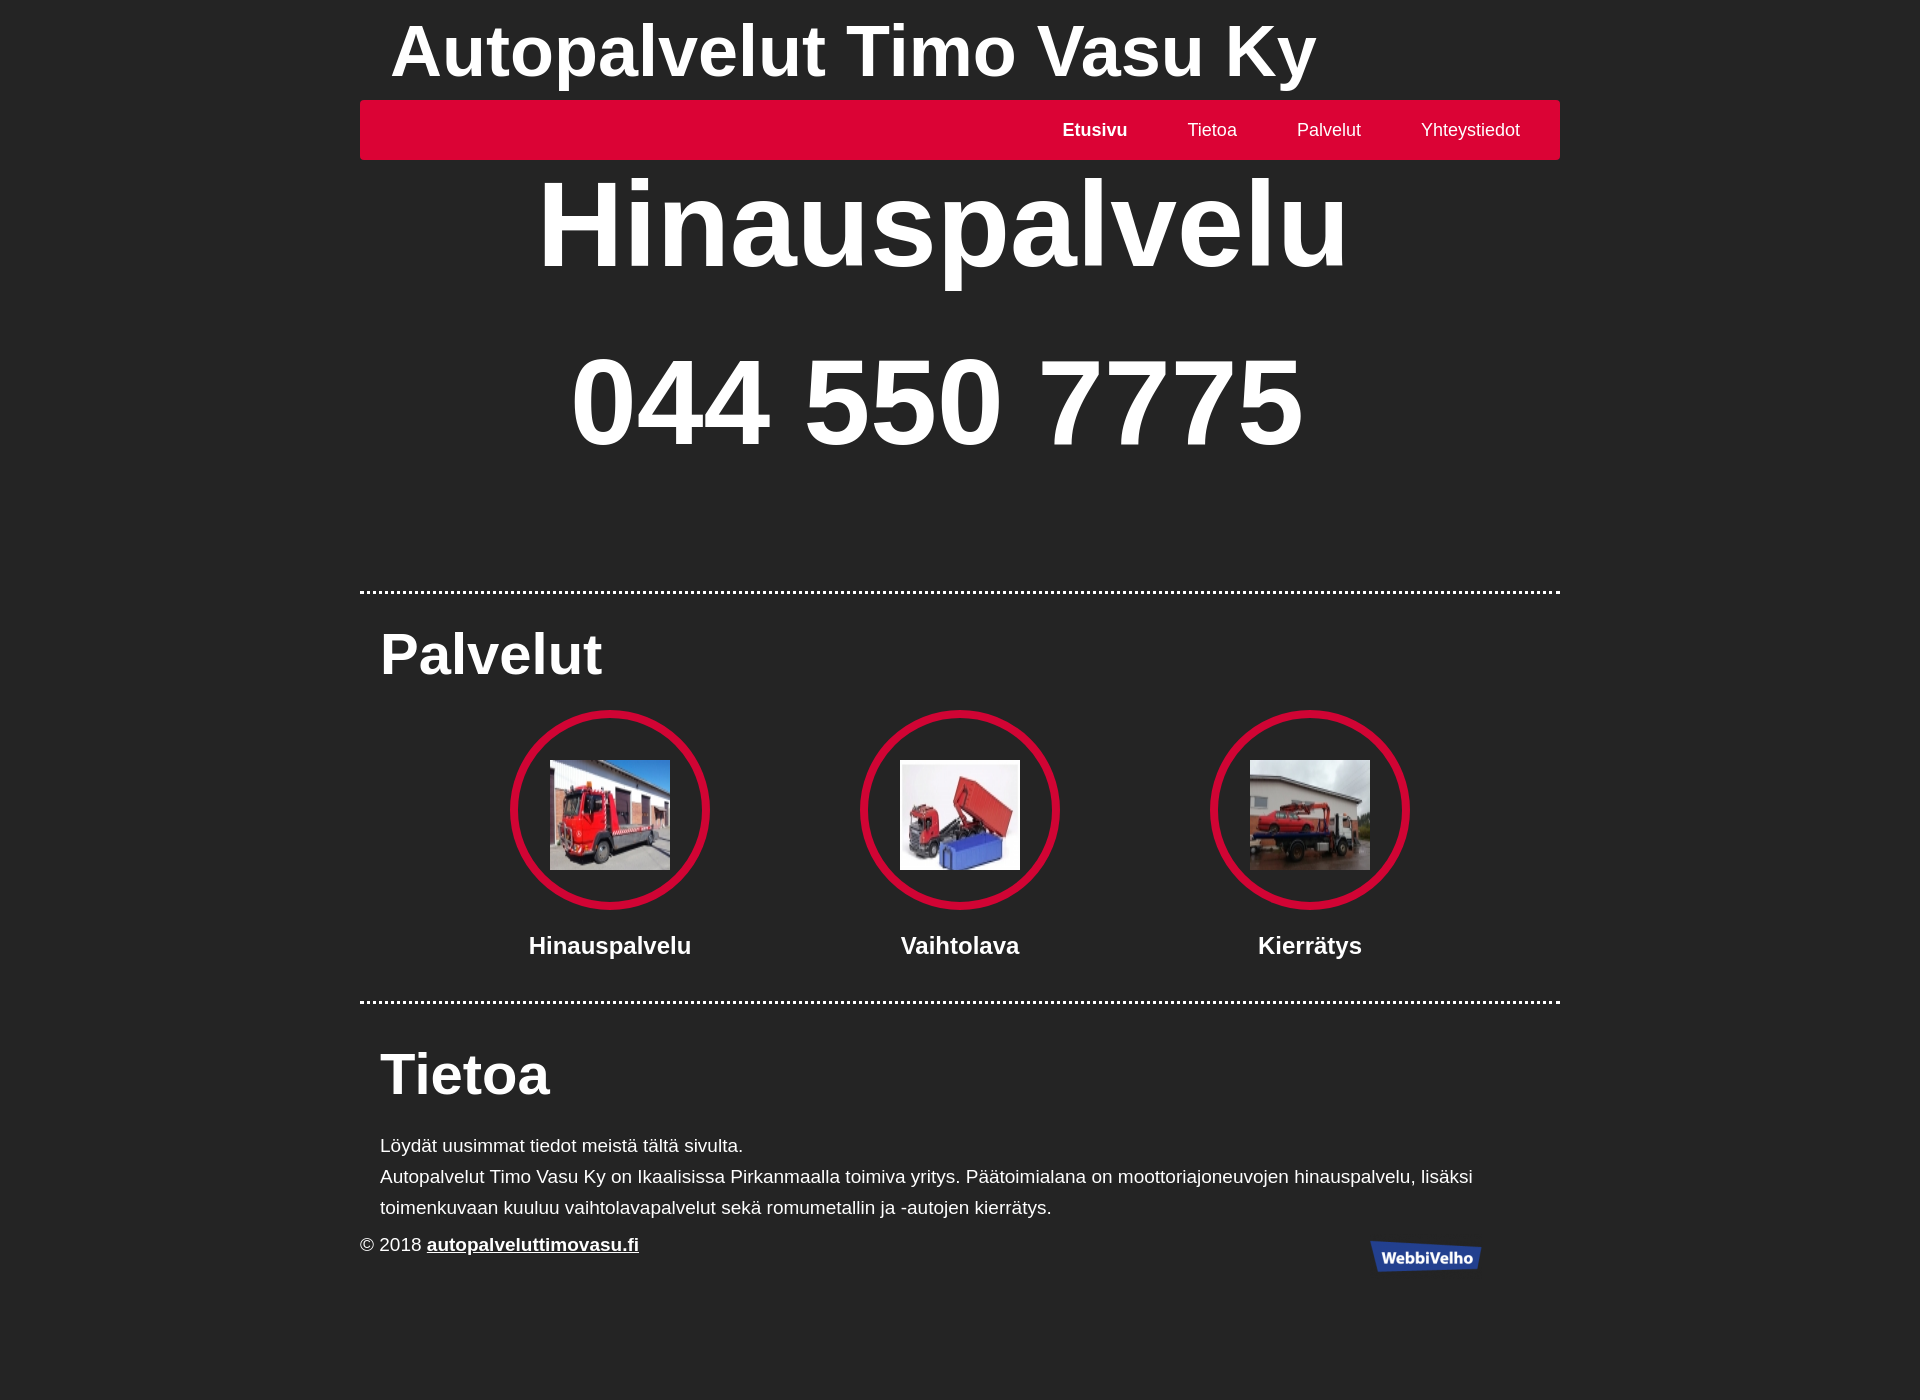 Näyttökuva autopalveluttimovasu.fi